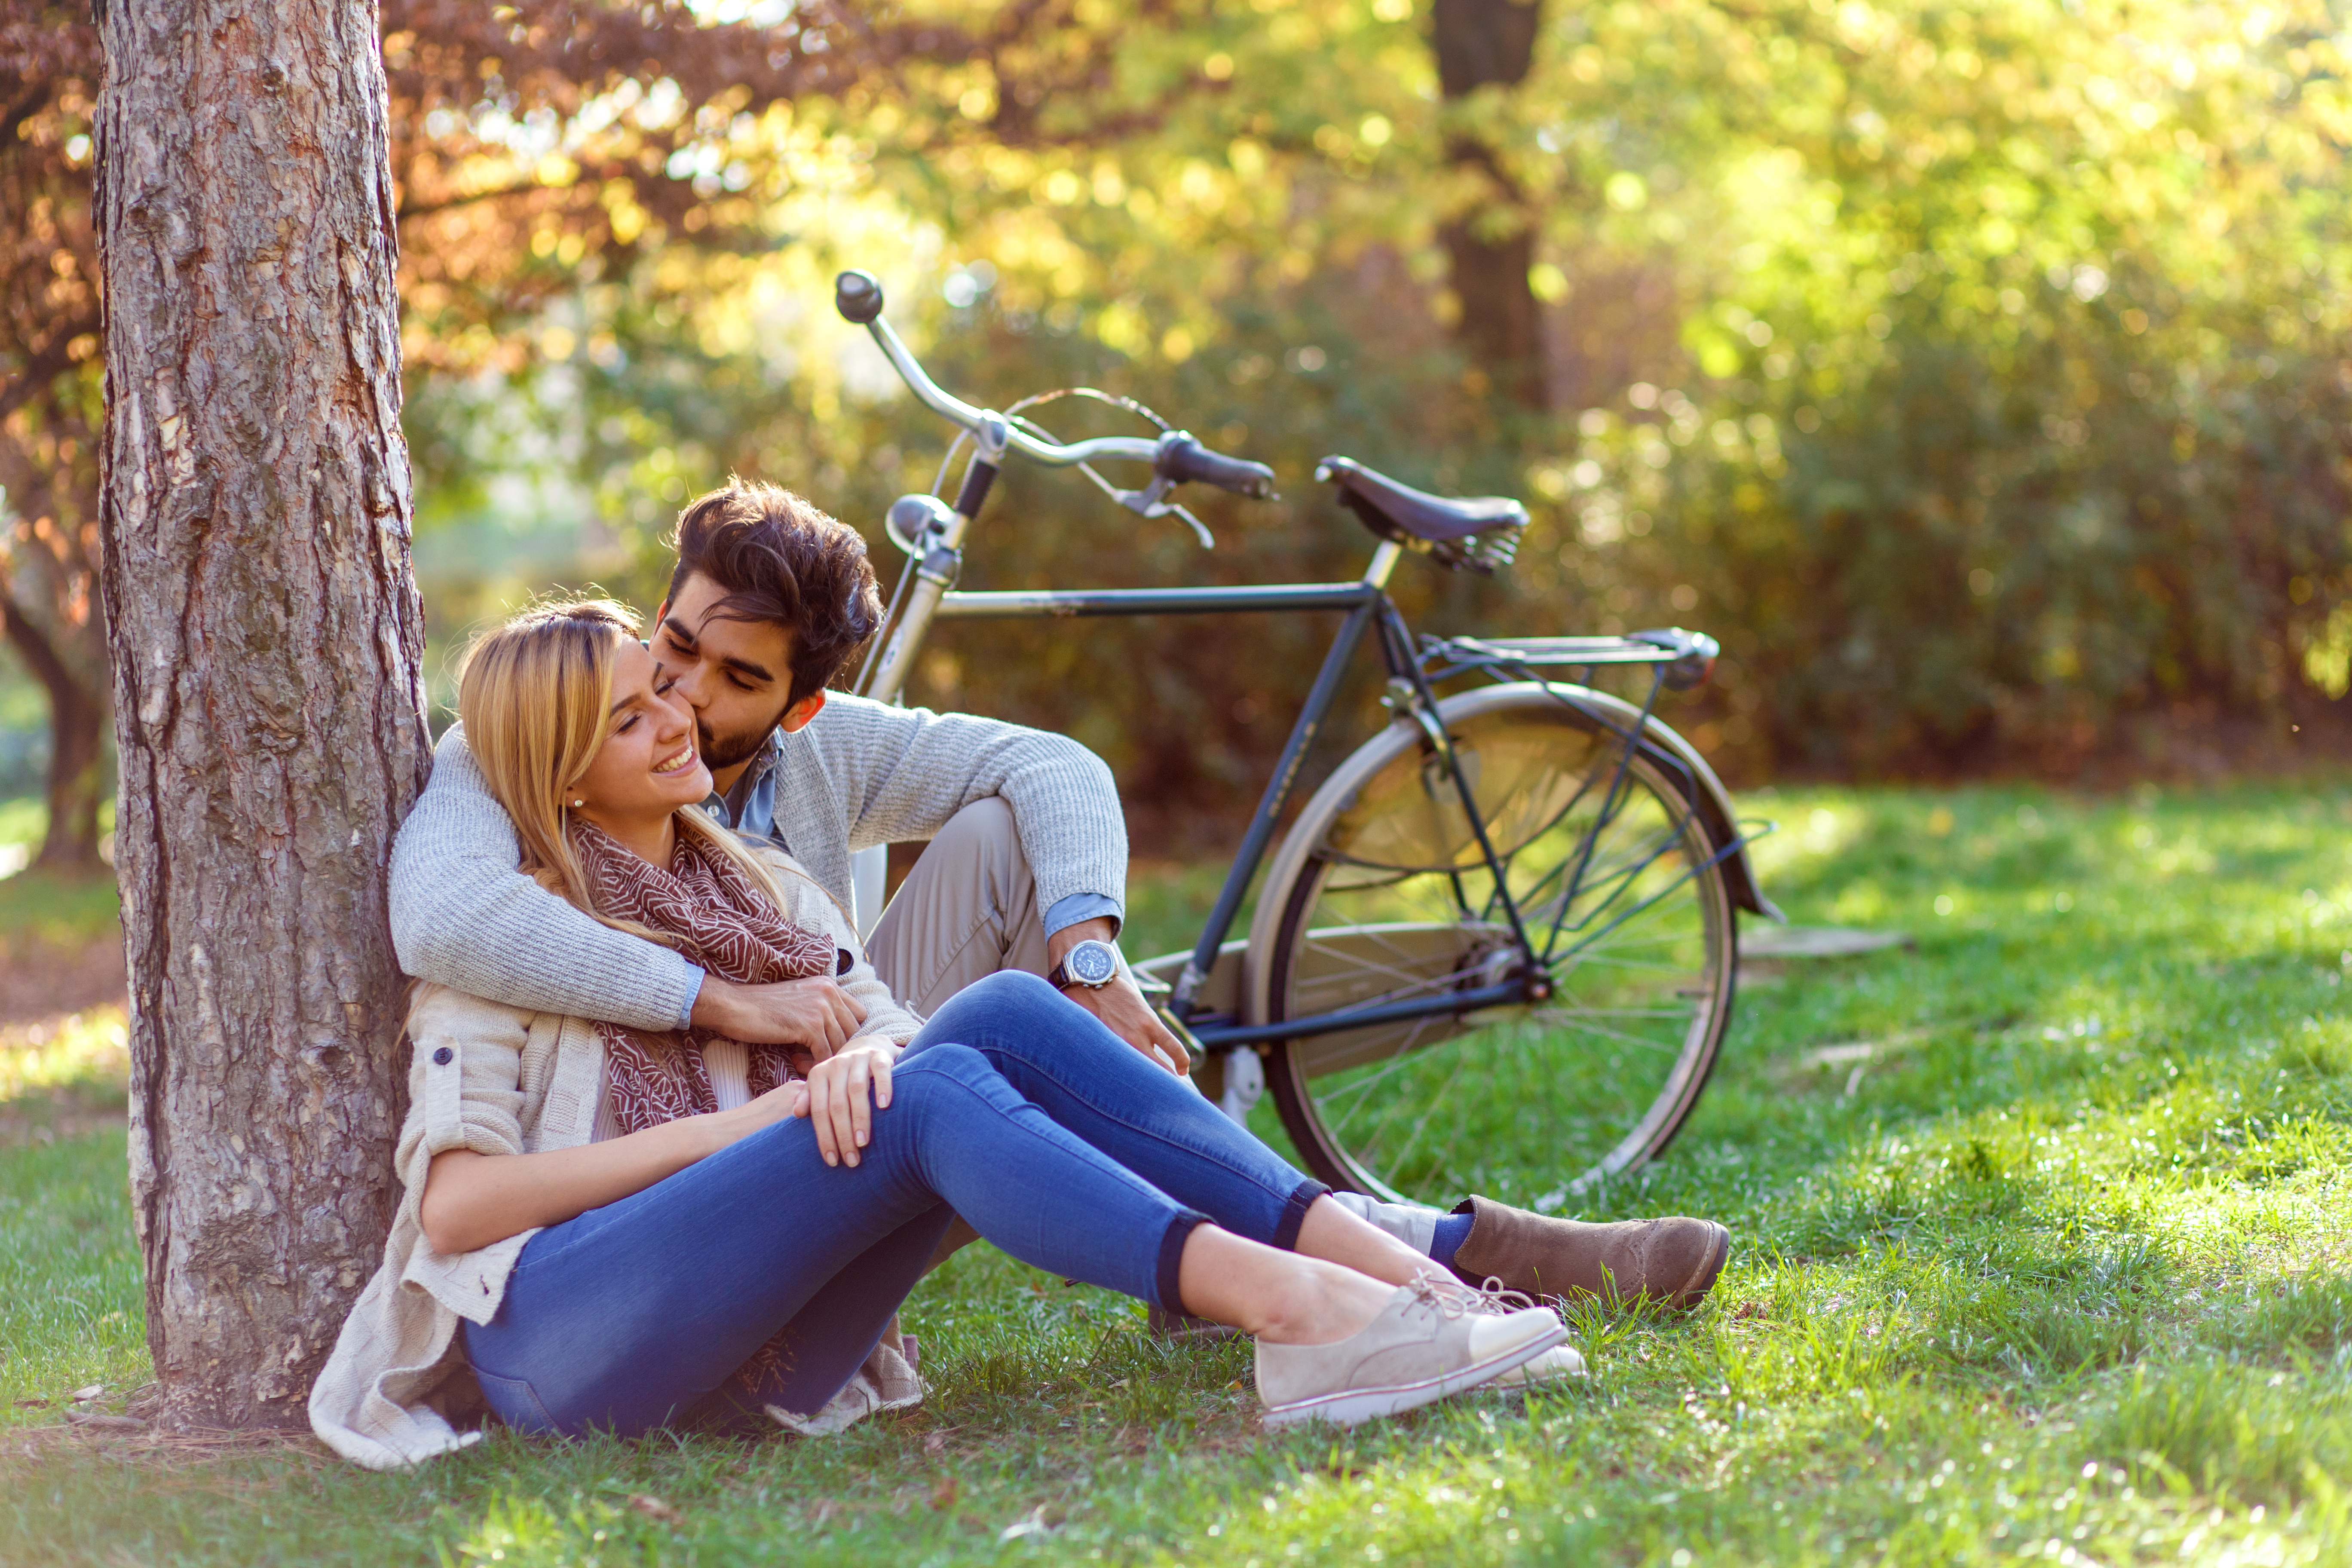 Un mari embrassant sa femme | Source : Shutterstock